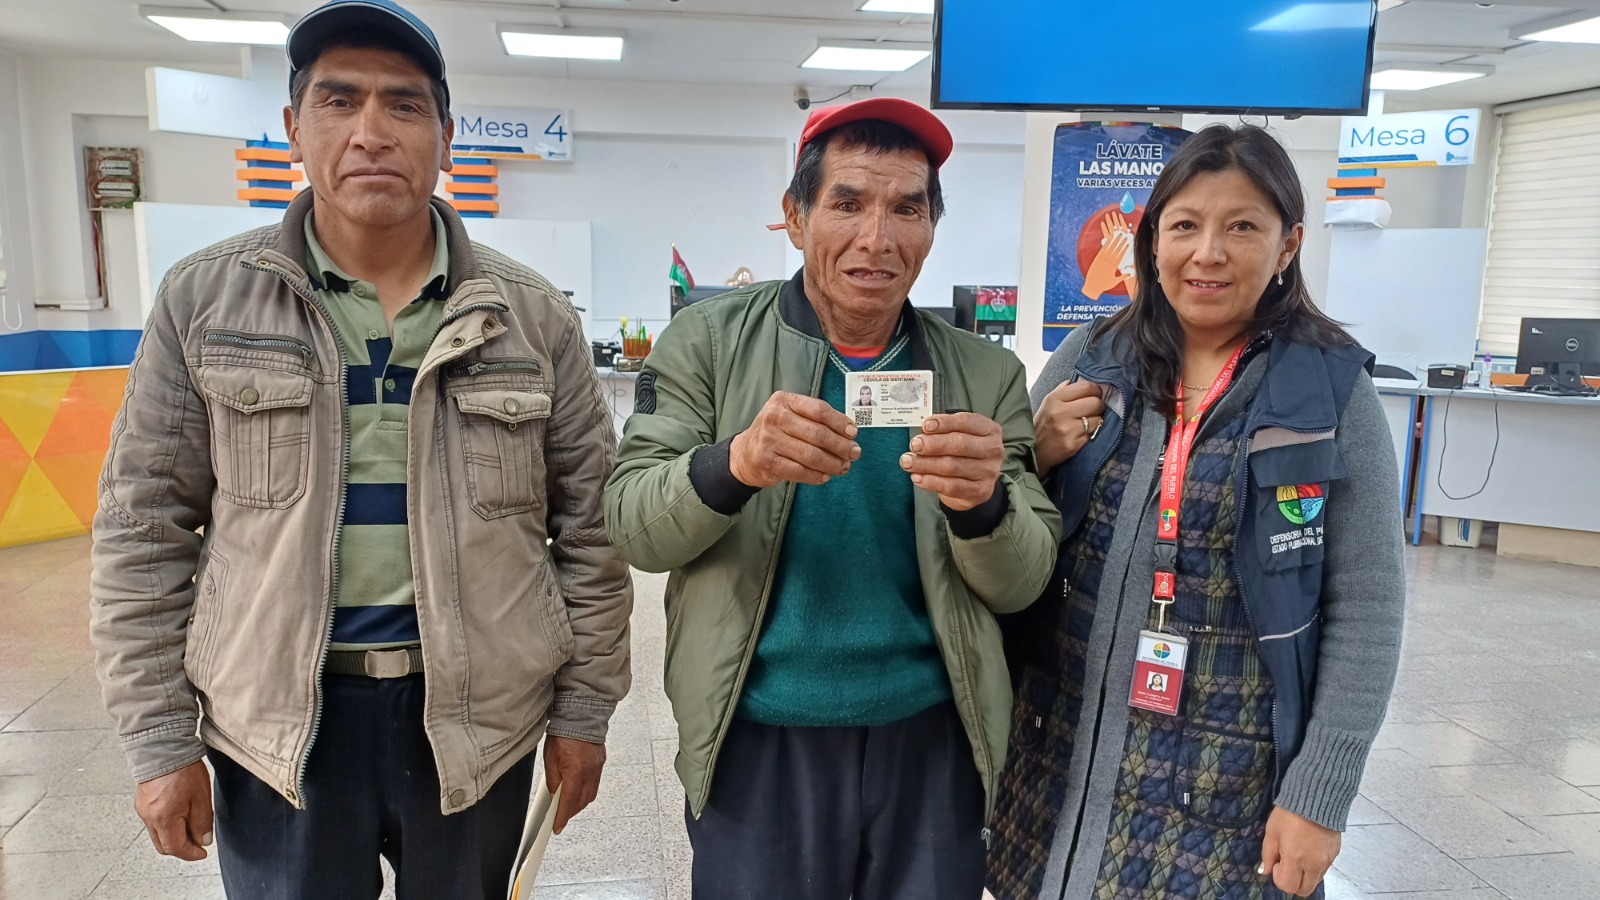 La Paz: Defensoría del Pueblo gestionó que una persona adulta mayor del municipio de Chuma obtenga su certificado de nacimiento y cédula de identidad